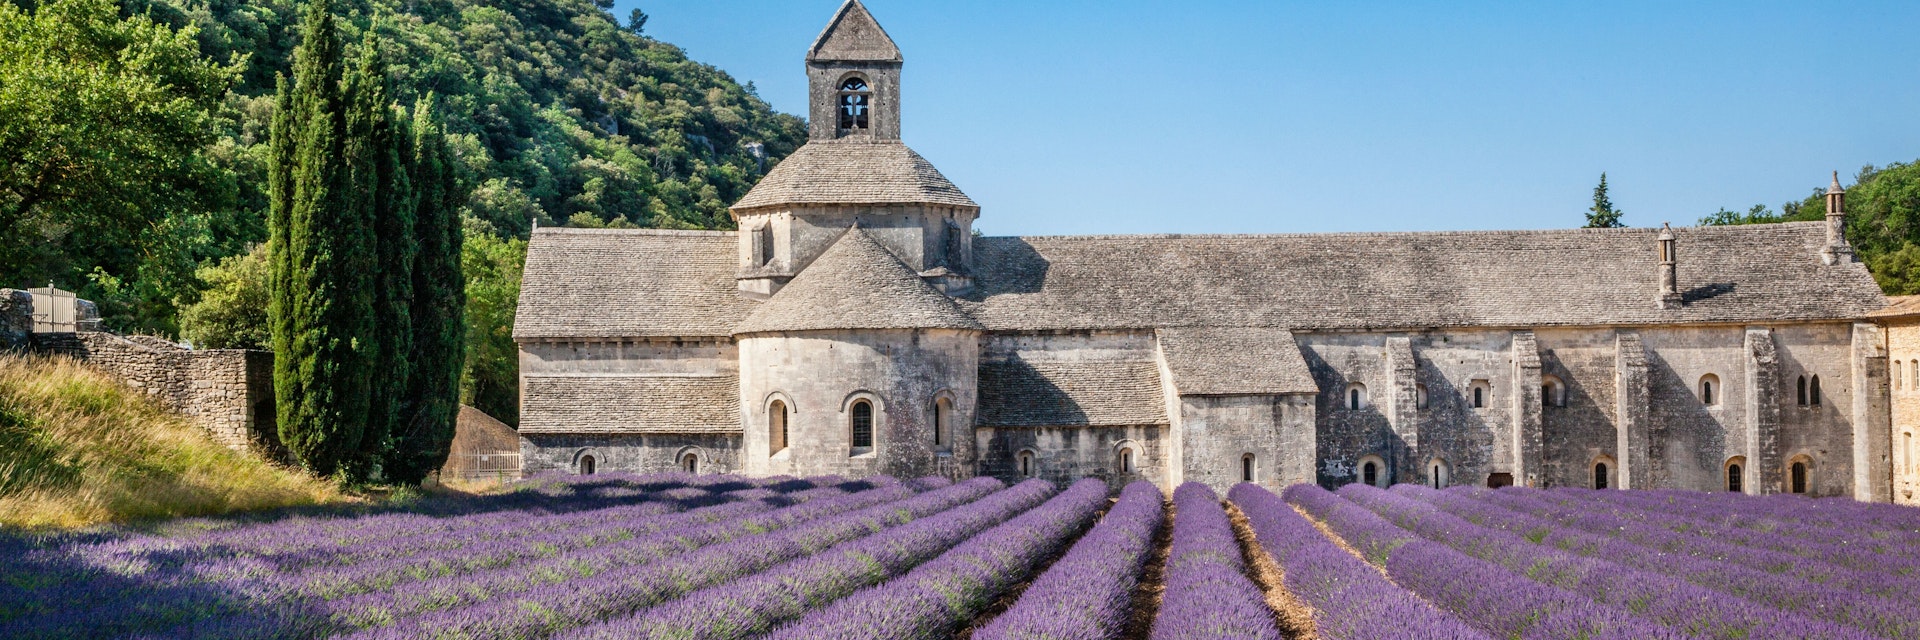 France, Provence-Alpes-Cote d'Azur, Vaucluse, Luberon, Sénanque Abbey, Abbaye Notre-Dame de Sénanque, view of the Cistercian abbey with lavender fields
Sénanque Abbey with lavender fields - stock photo
